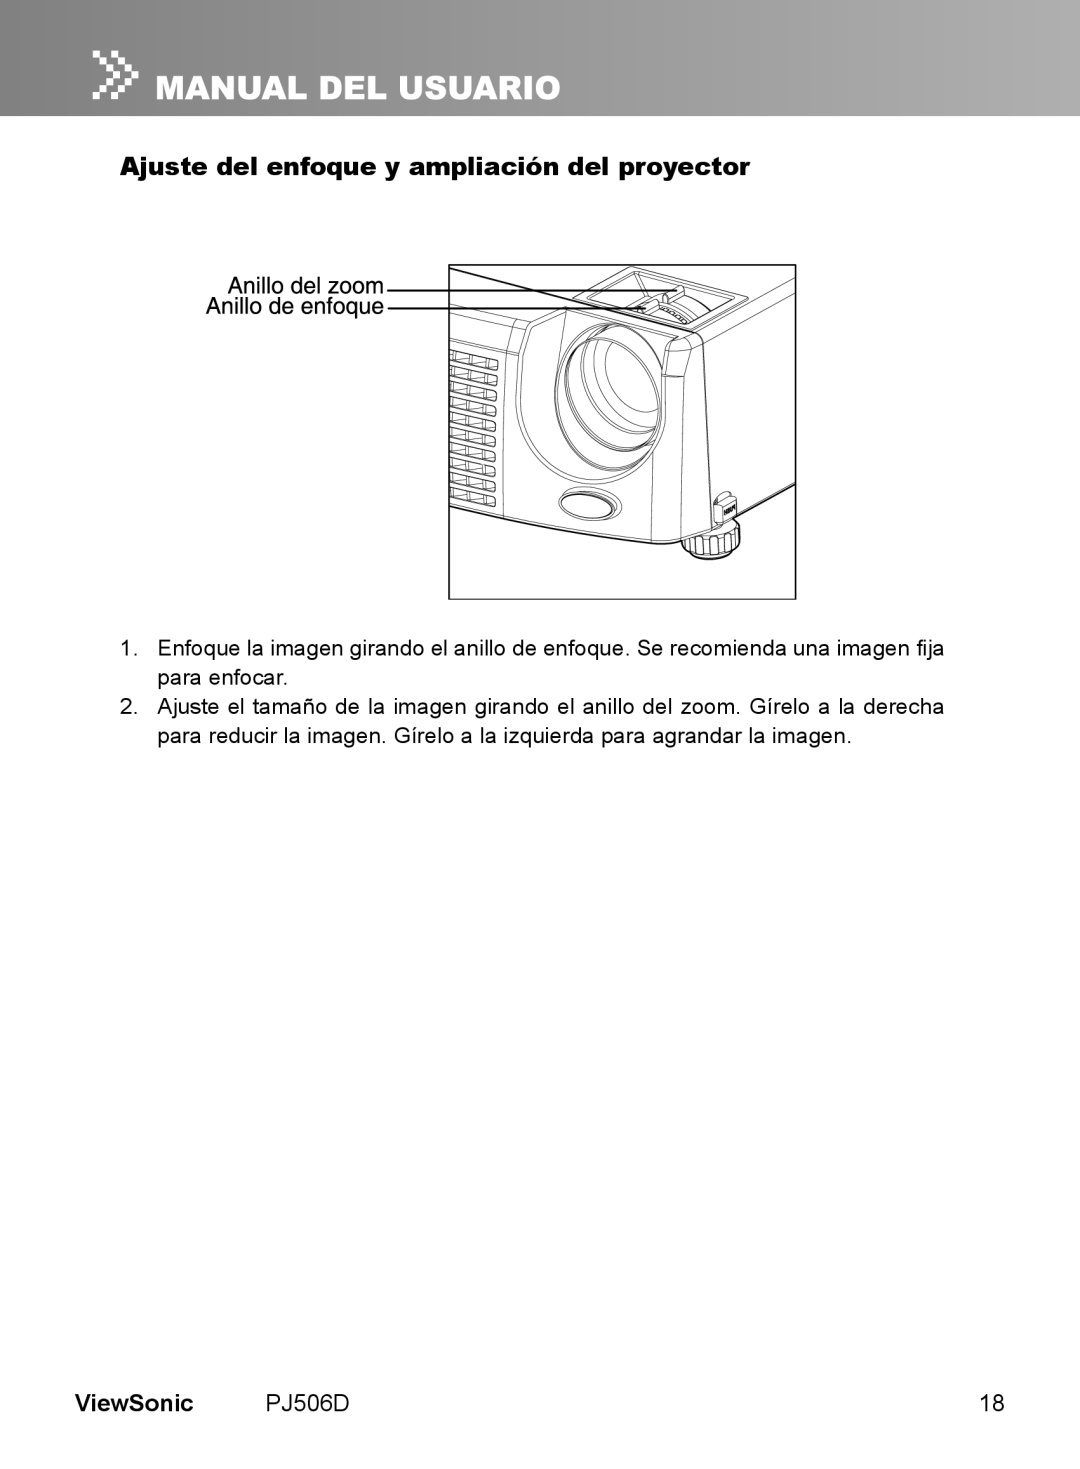 ViewSonic VS11452 manual Ajuste del enfoque y ampliación del proyector, ViewSonic 